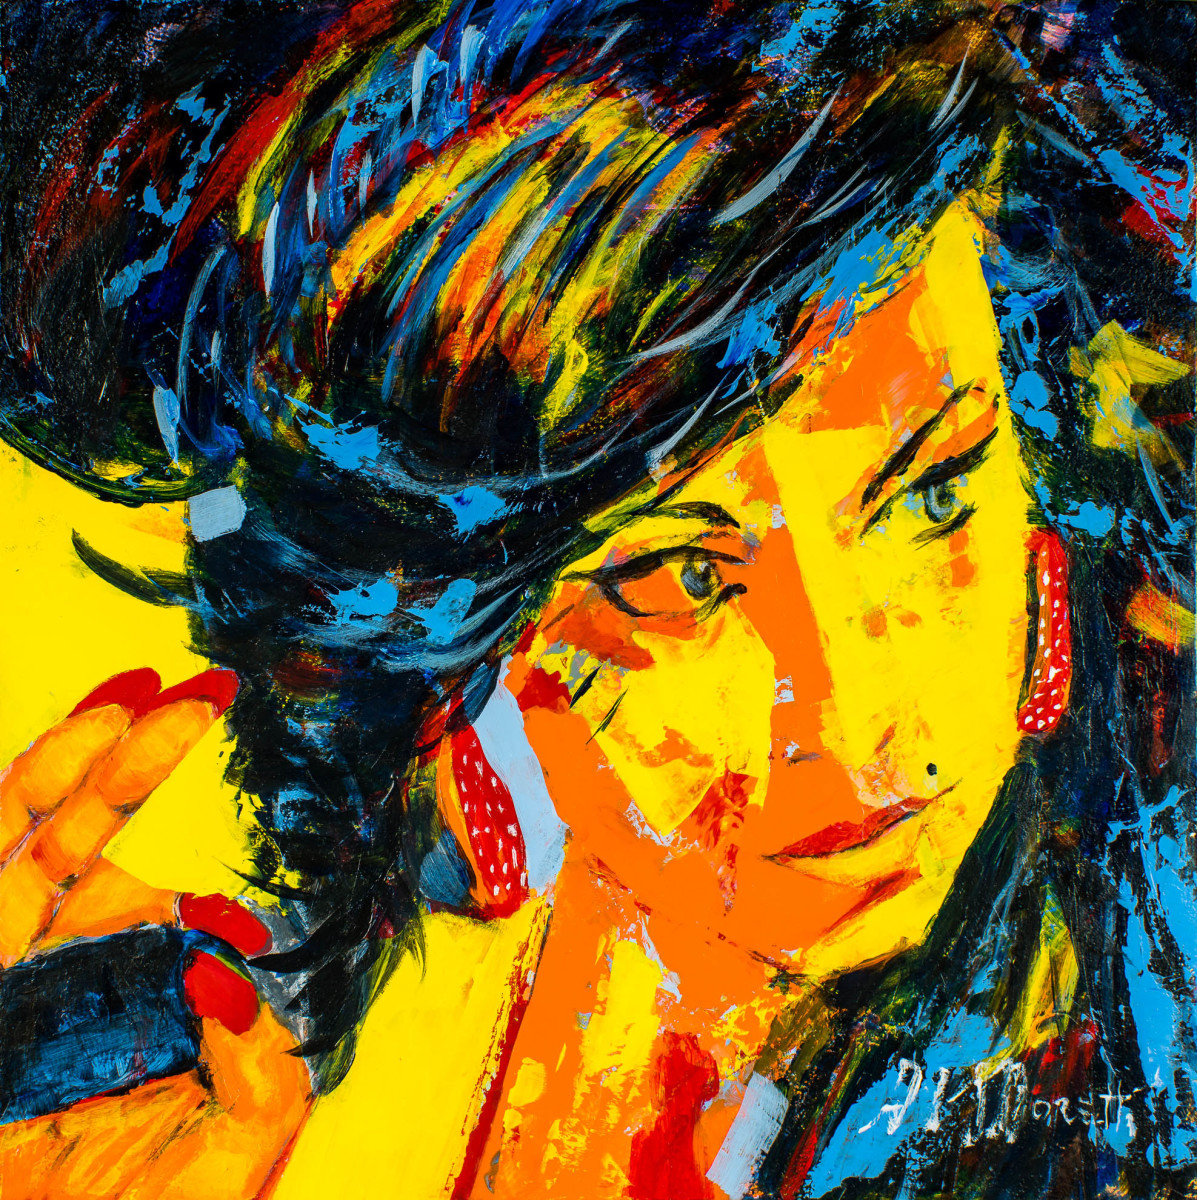 Amy Winehouse No 1 by Al Moretti 